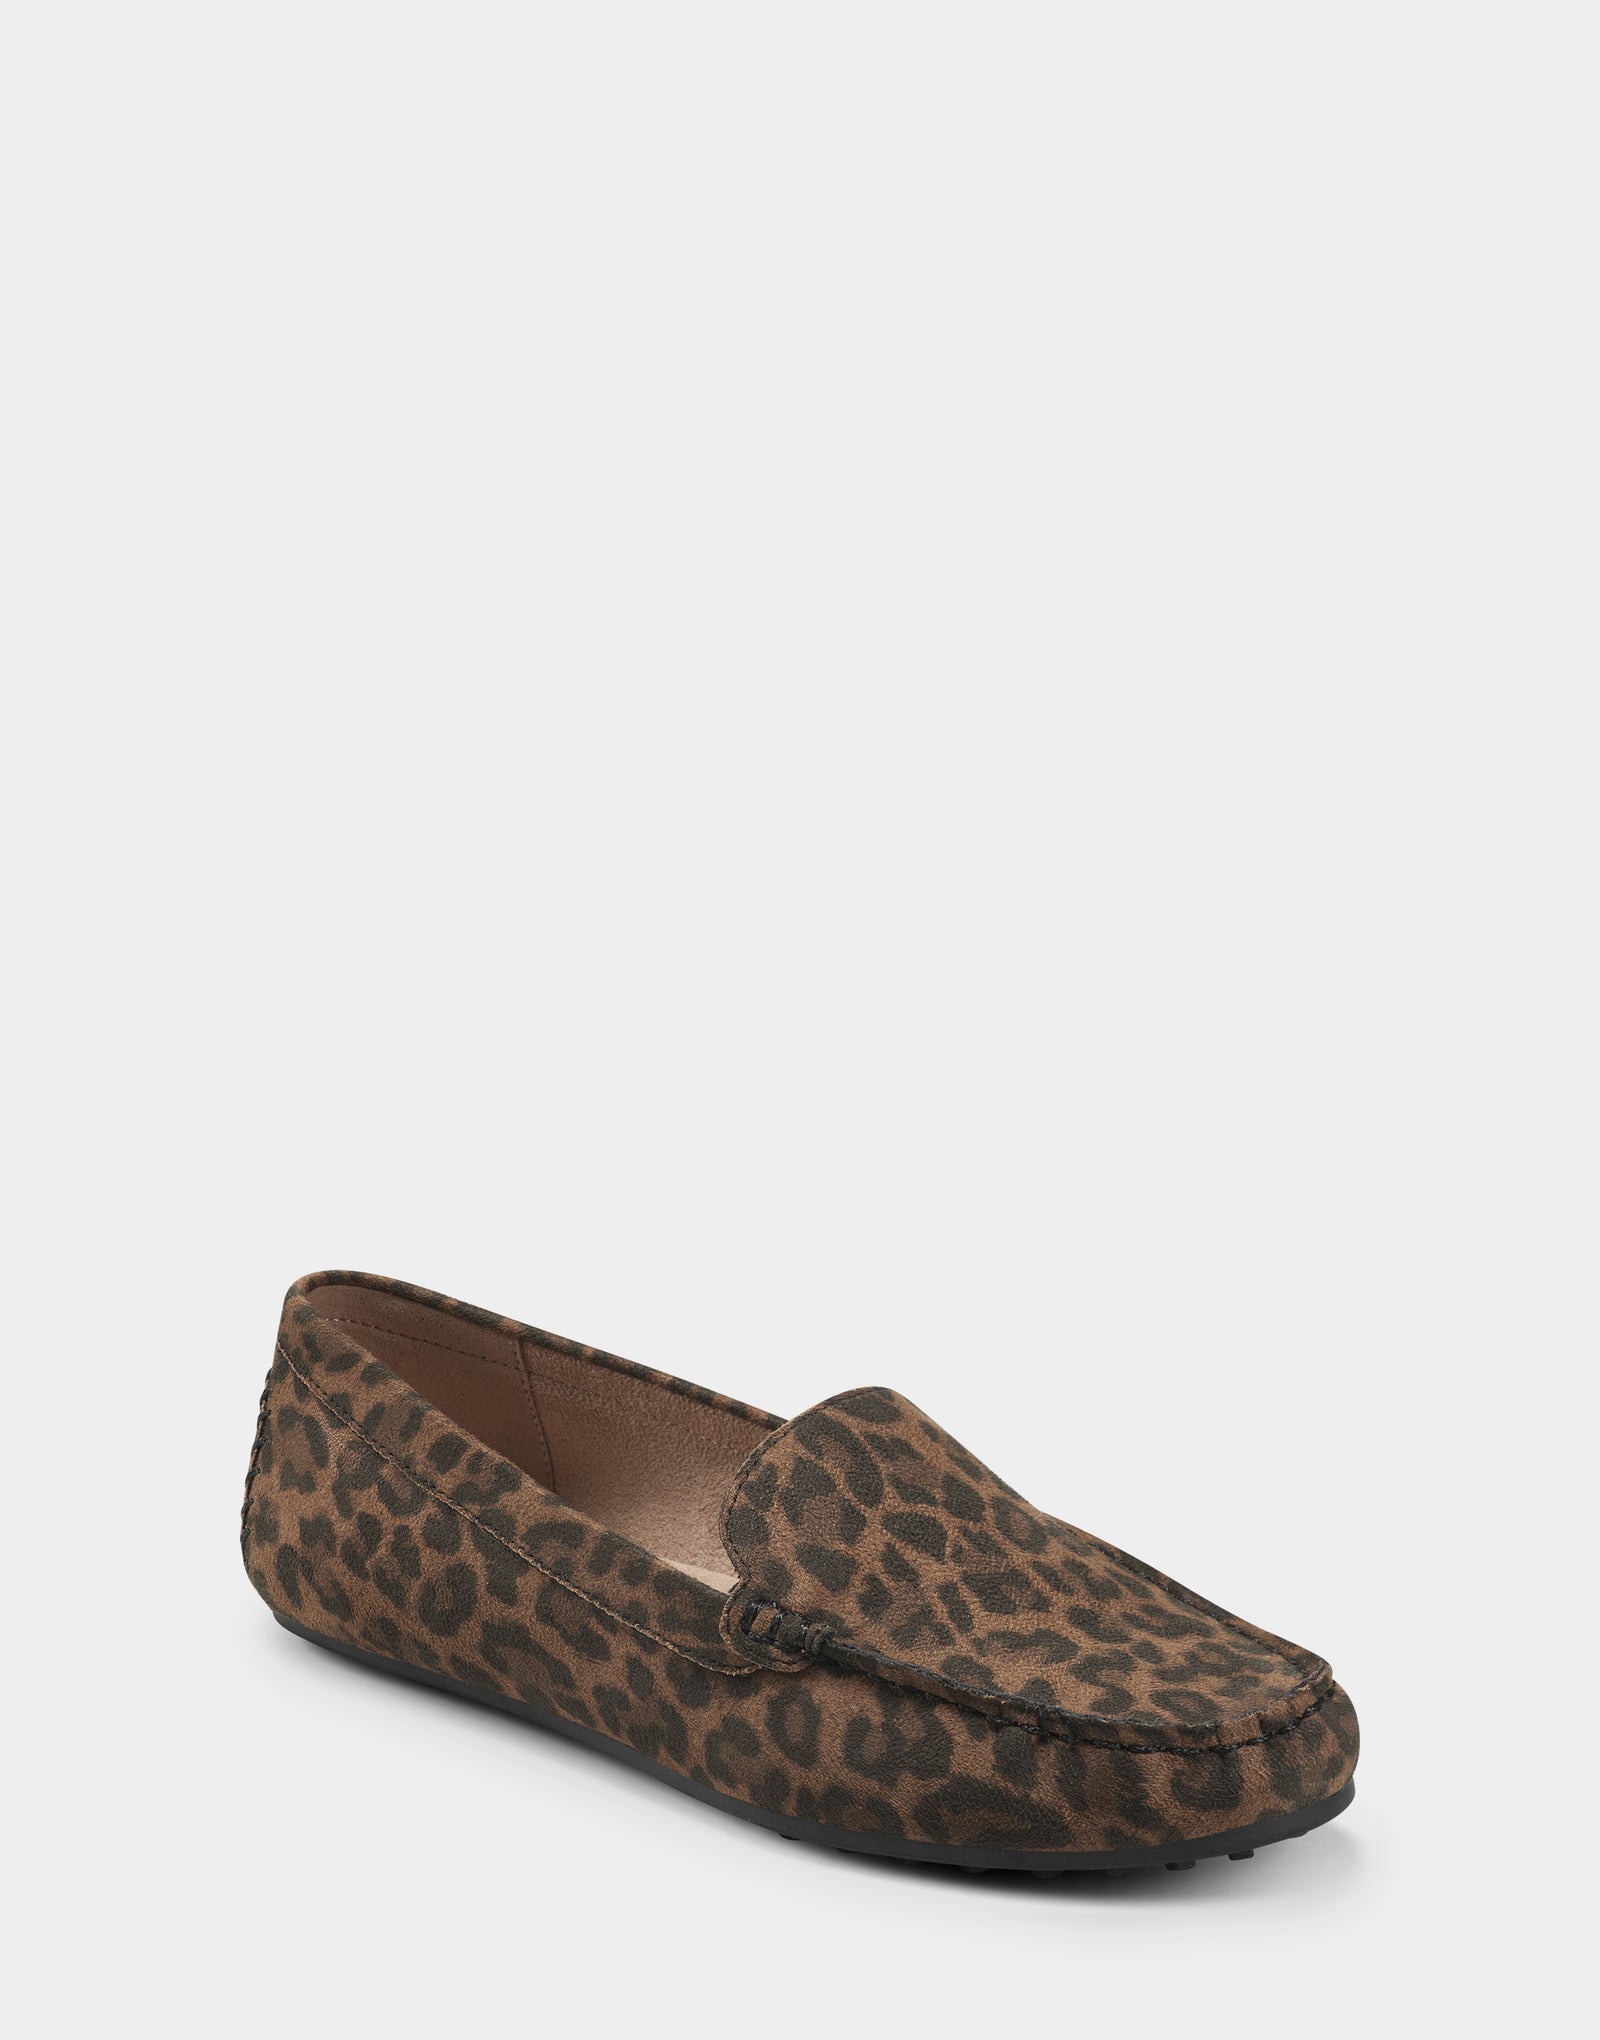 Women's Loafer in Leopard